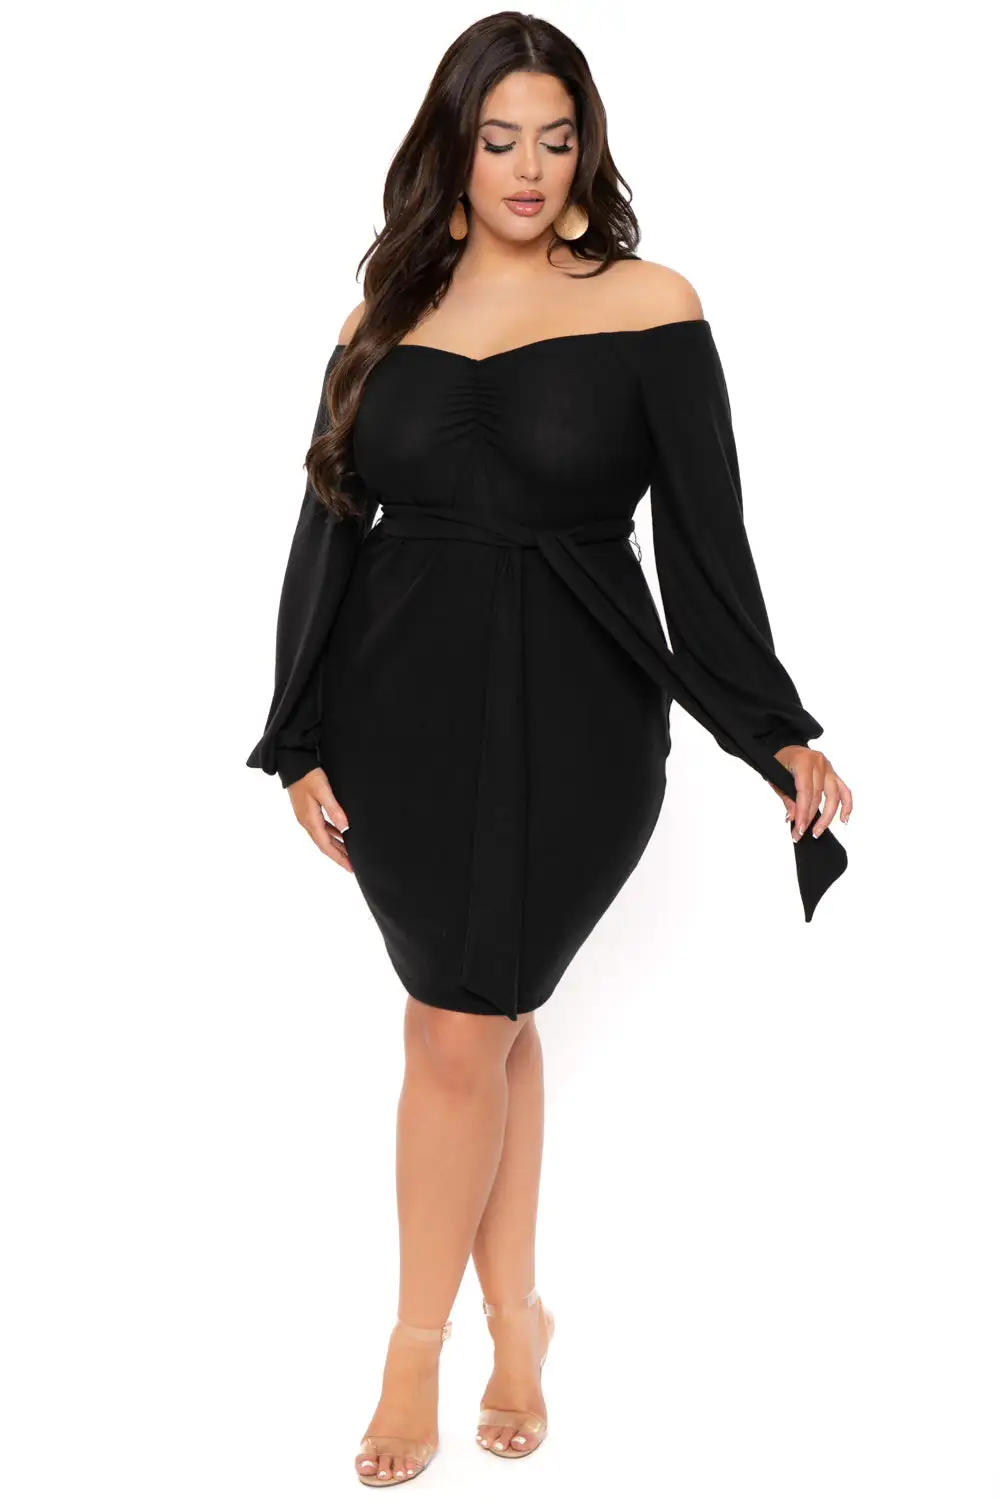 Plus Size Kiera Sweetheart Sweater Dress- Black